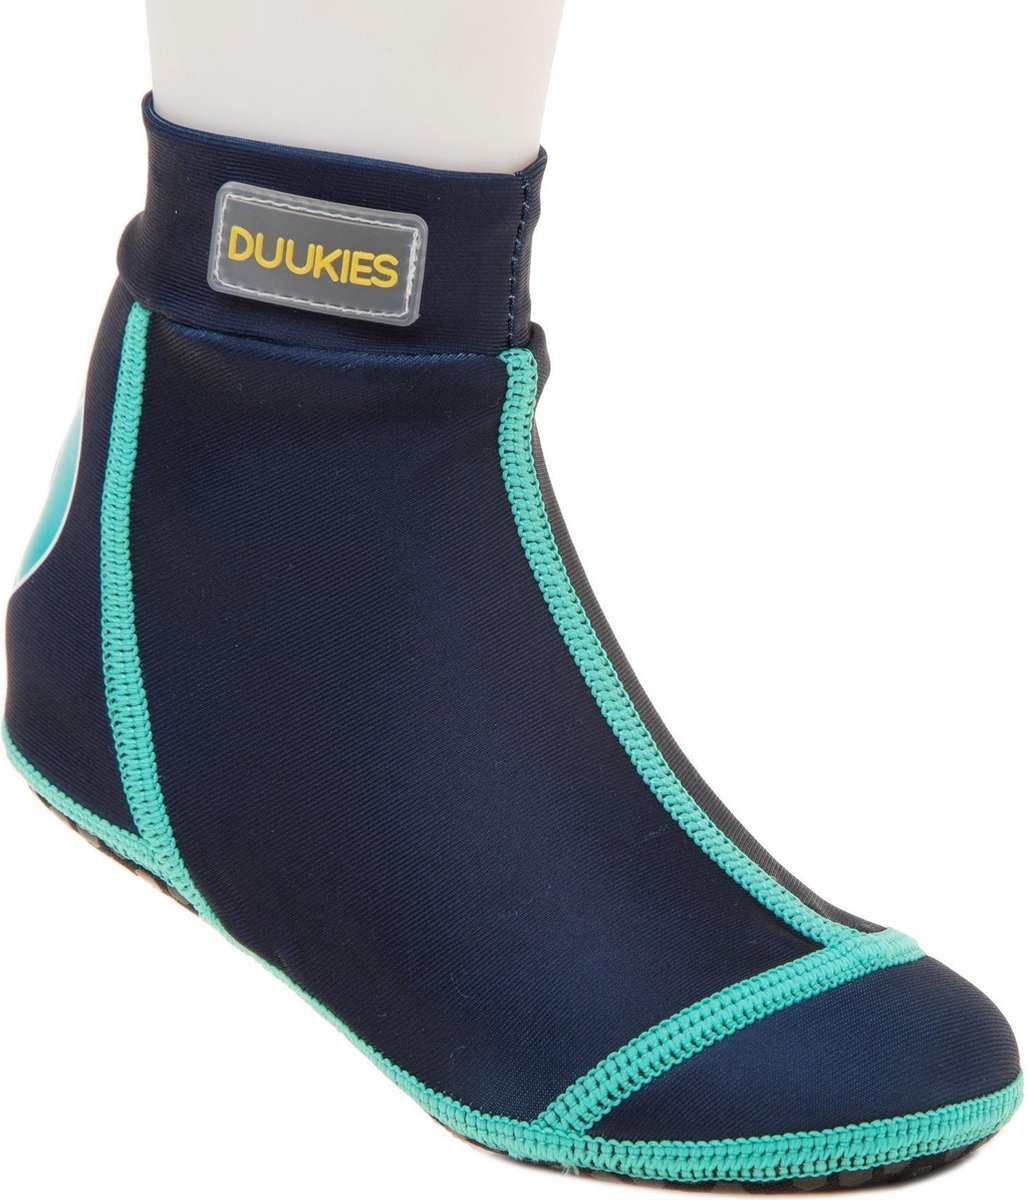 Duukies - Jongens UV-strandsokken - Blue/Green - Donkerblauw - maat 34-35EU